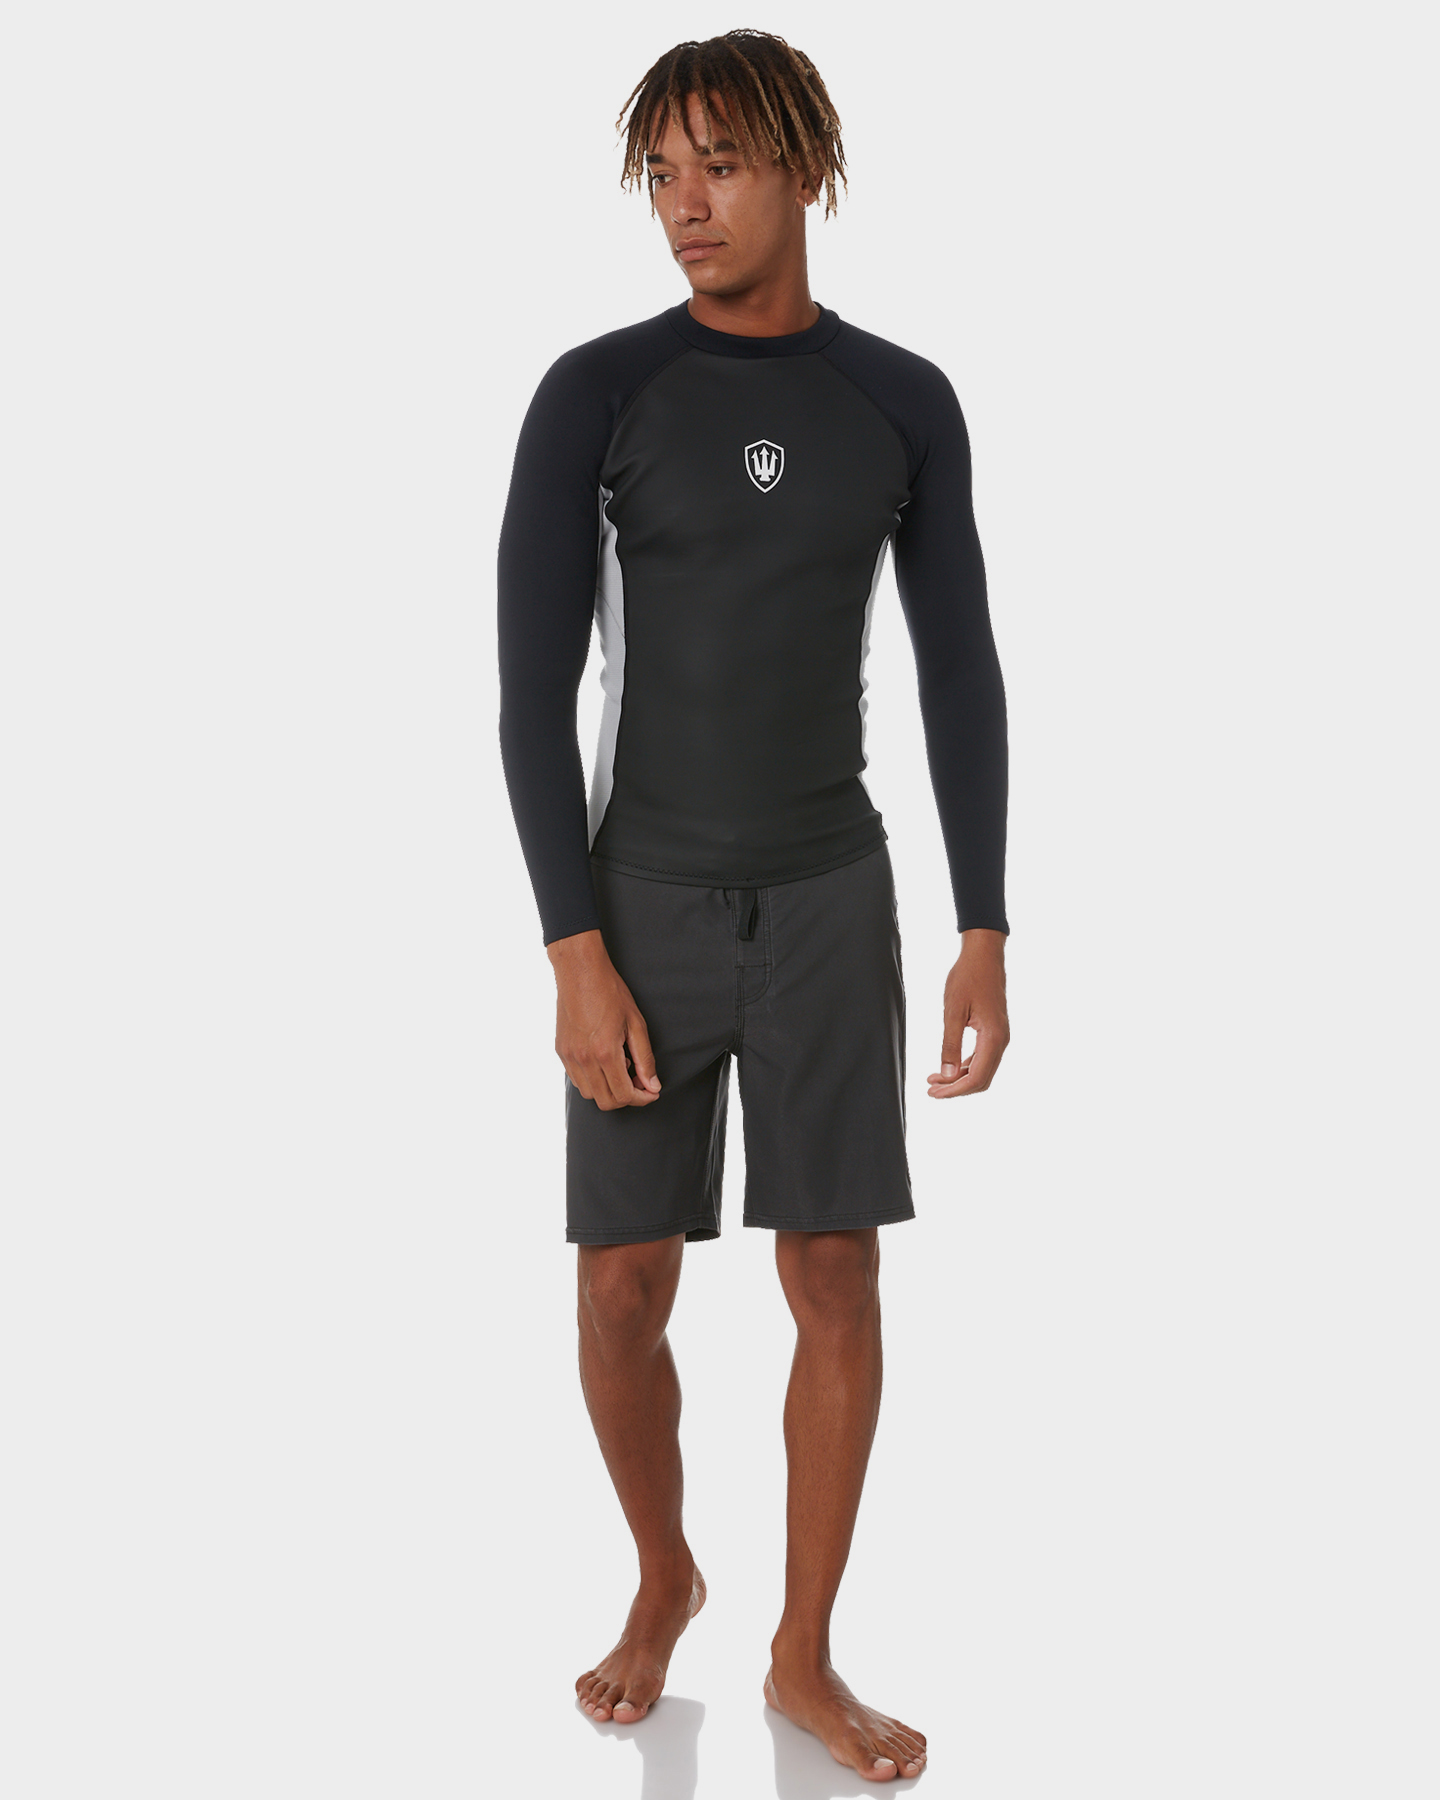 Fk Surf Zip Ls Jacket - Black Grey | SurfStitch